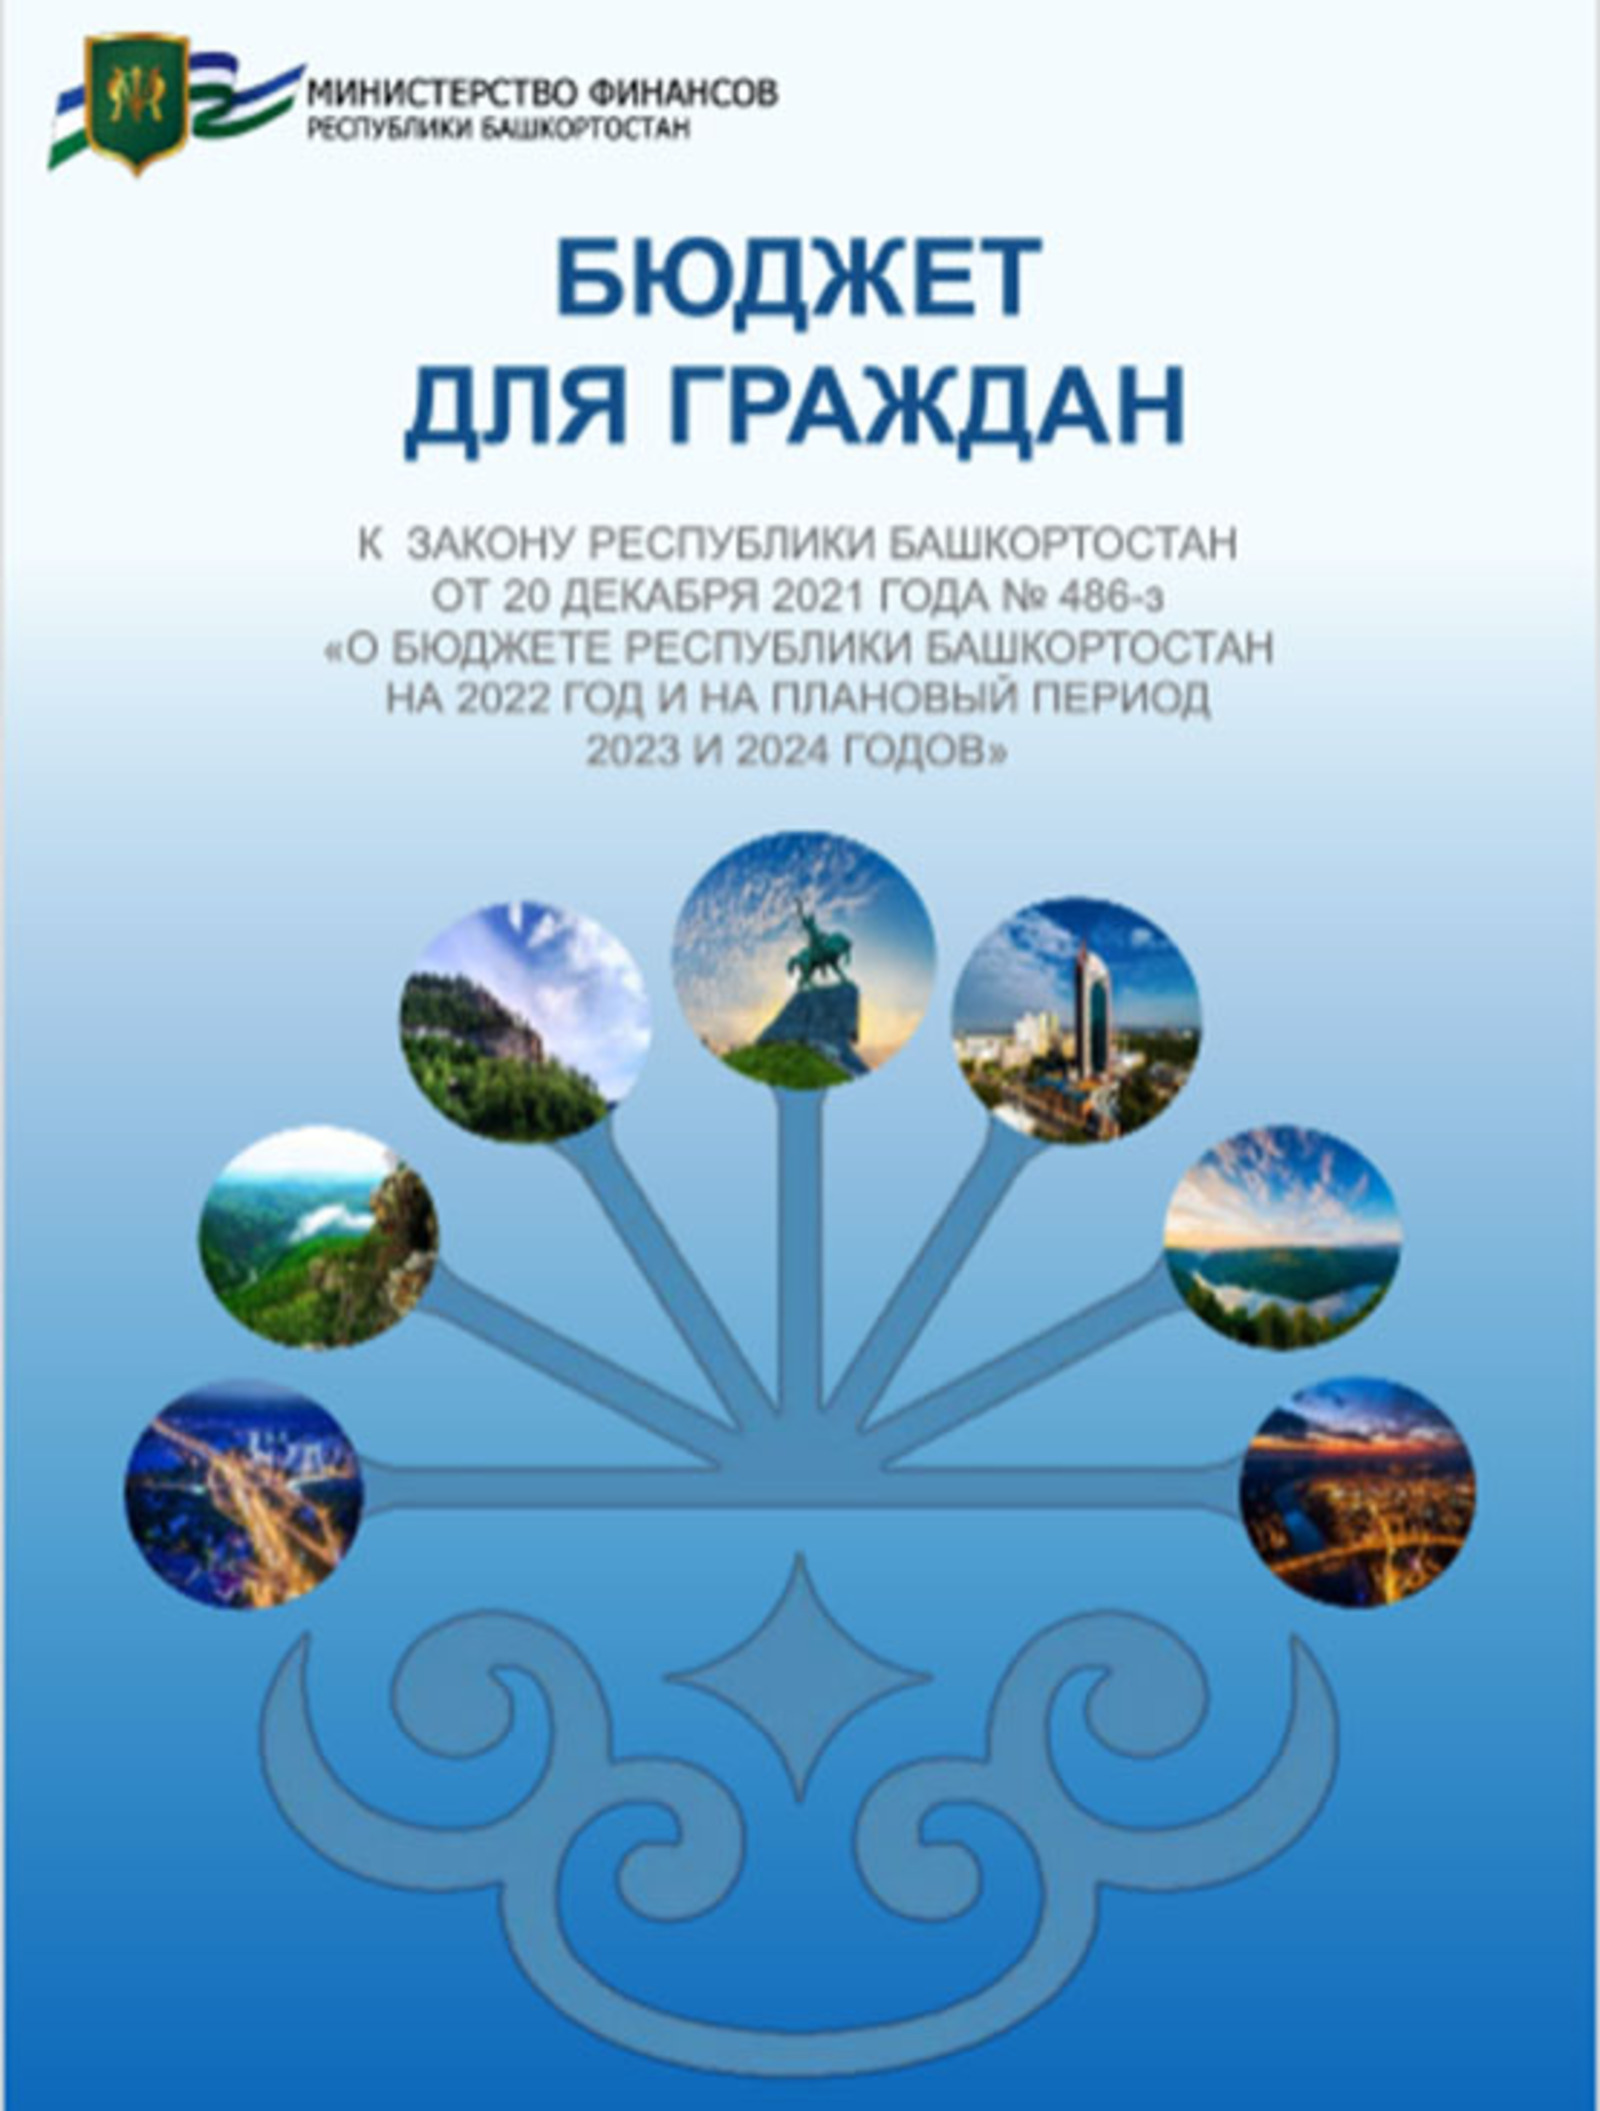 О принятом законе «О бюджете Республики Башкортостан на 2022 год и на плановый период 2023 и 2024 годов»